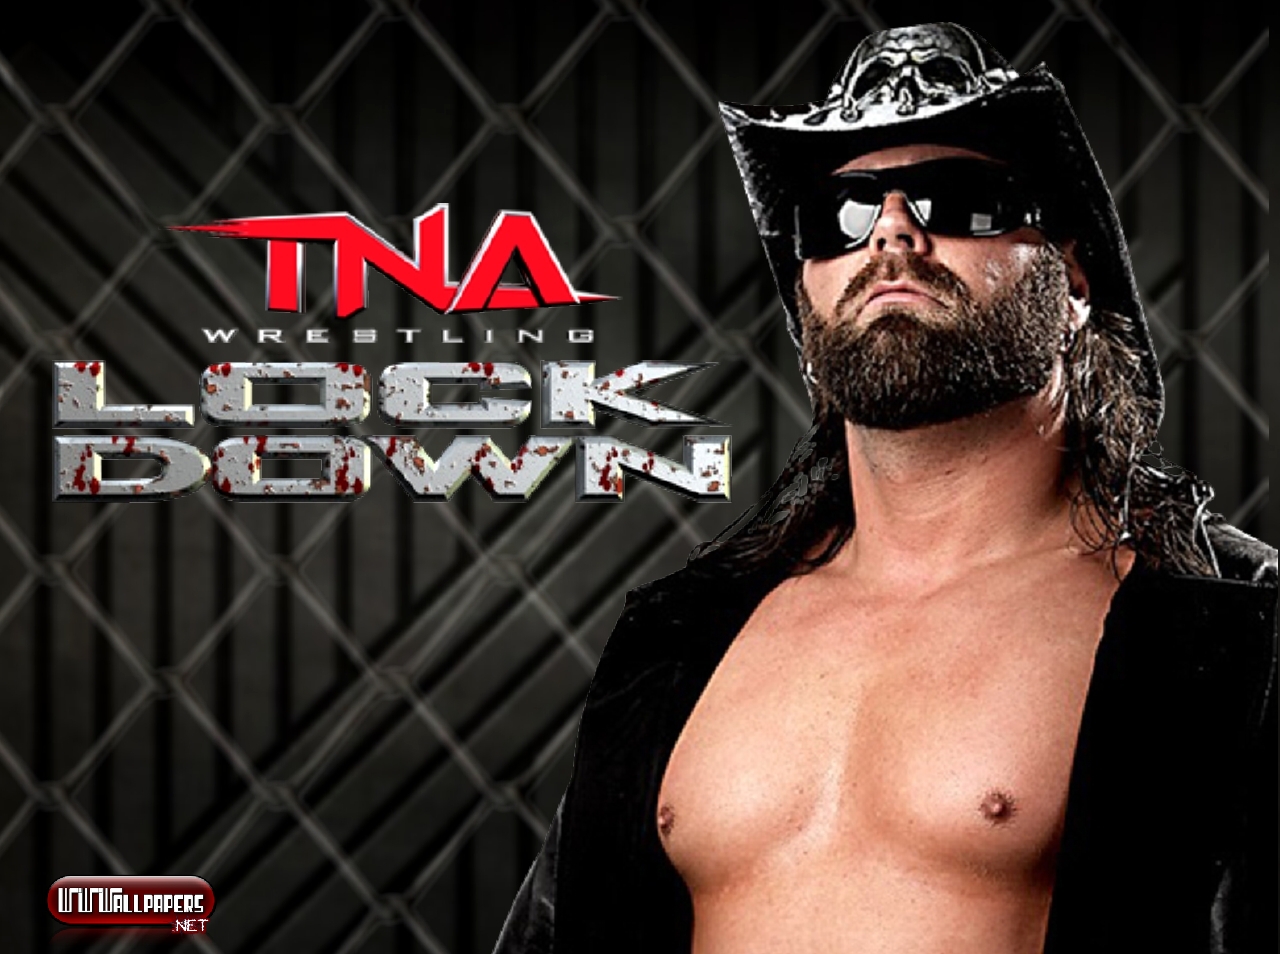 Wwe русская 545tv. WWE на русском. TNA 1/2. TNA дискография. Реслинг от 545 ТВ.